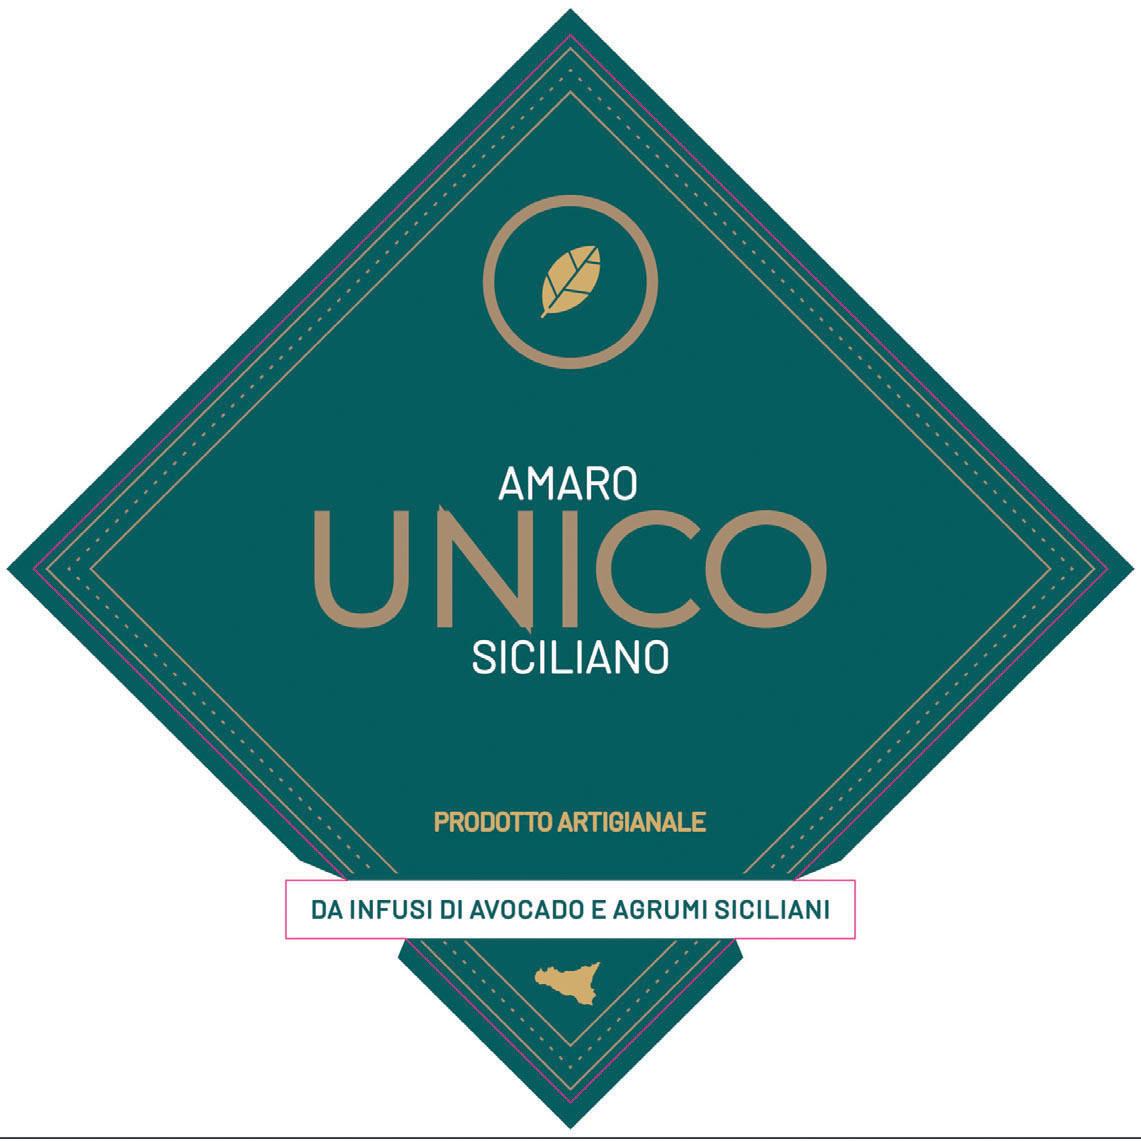 UNICO Amaro Siciliano label